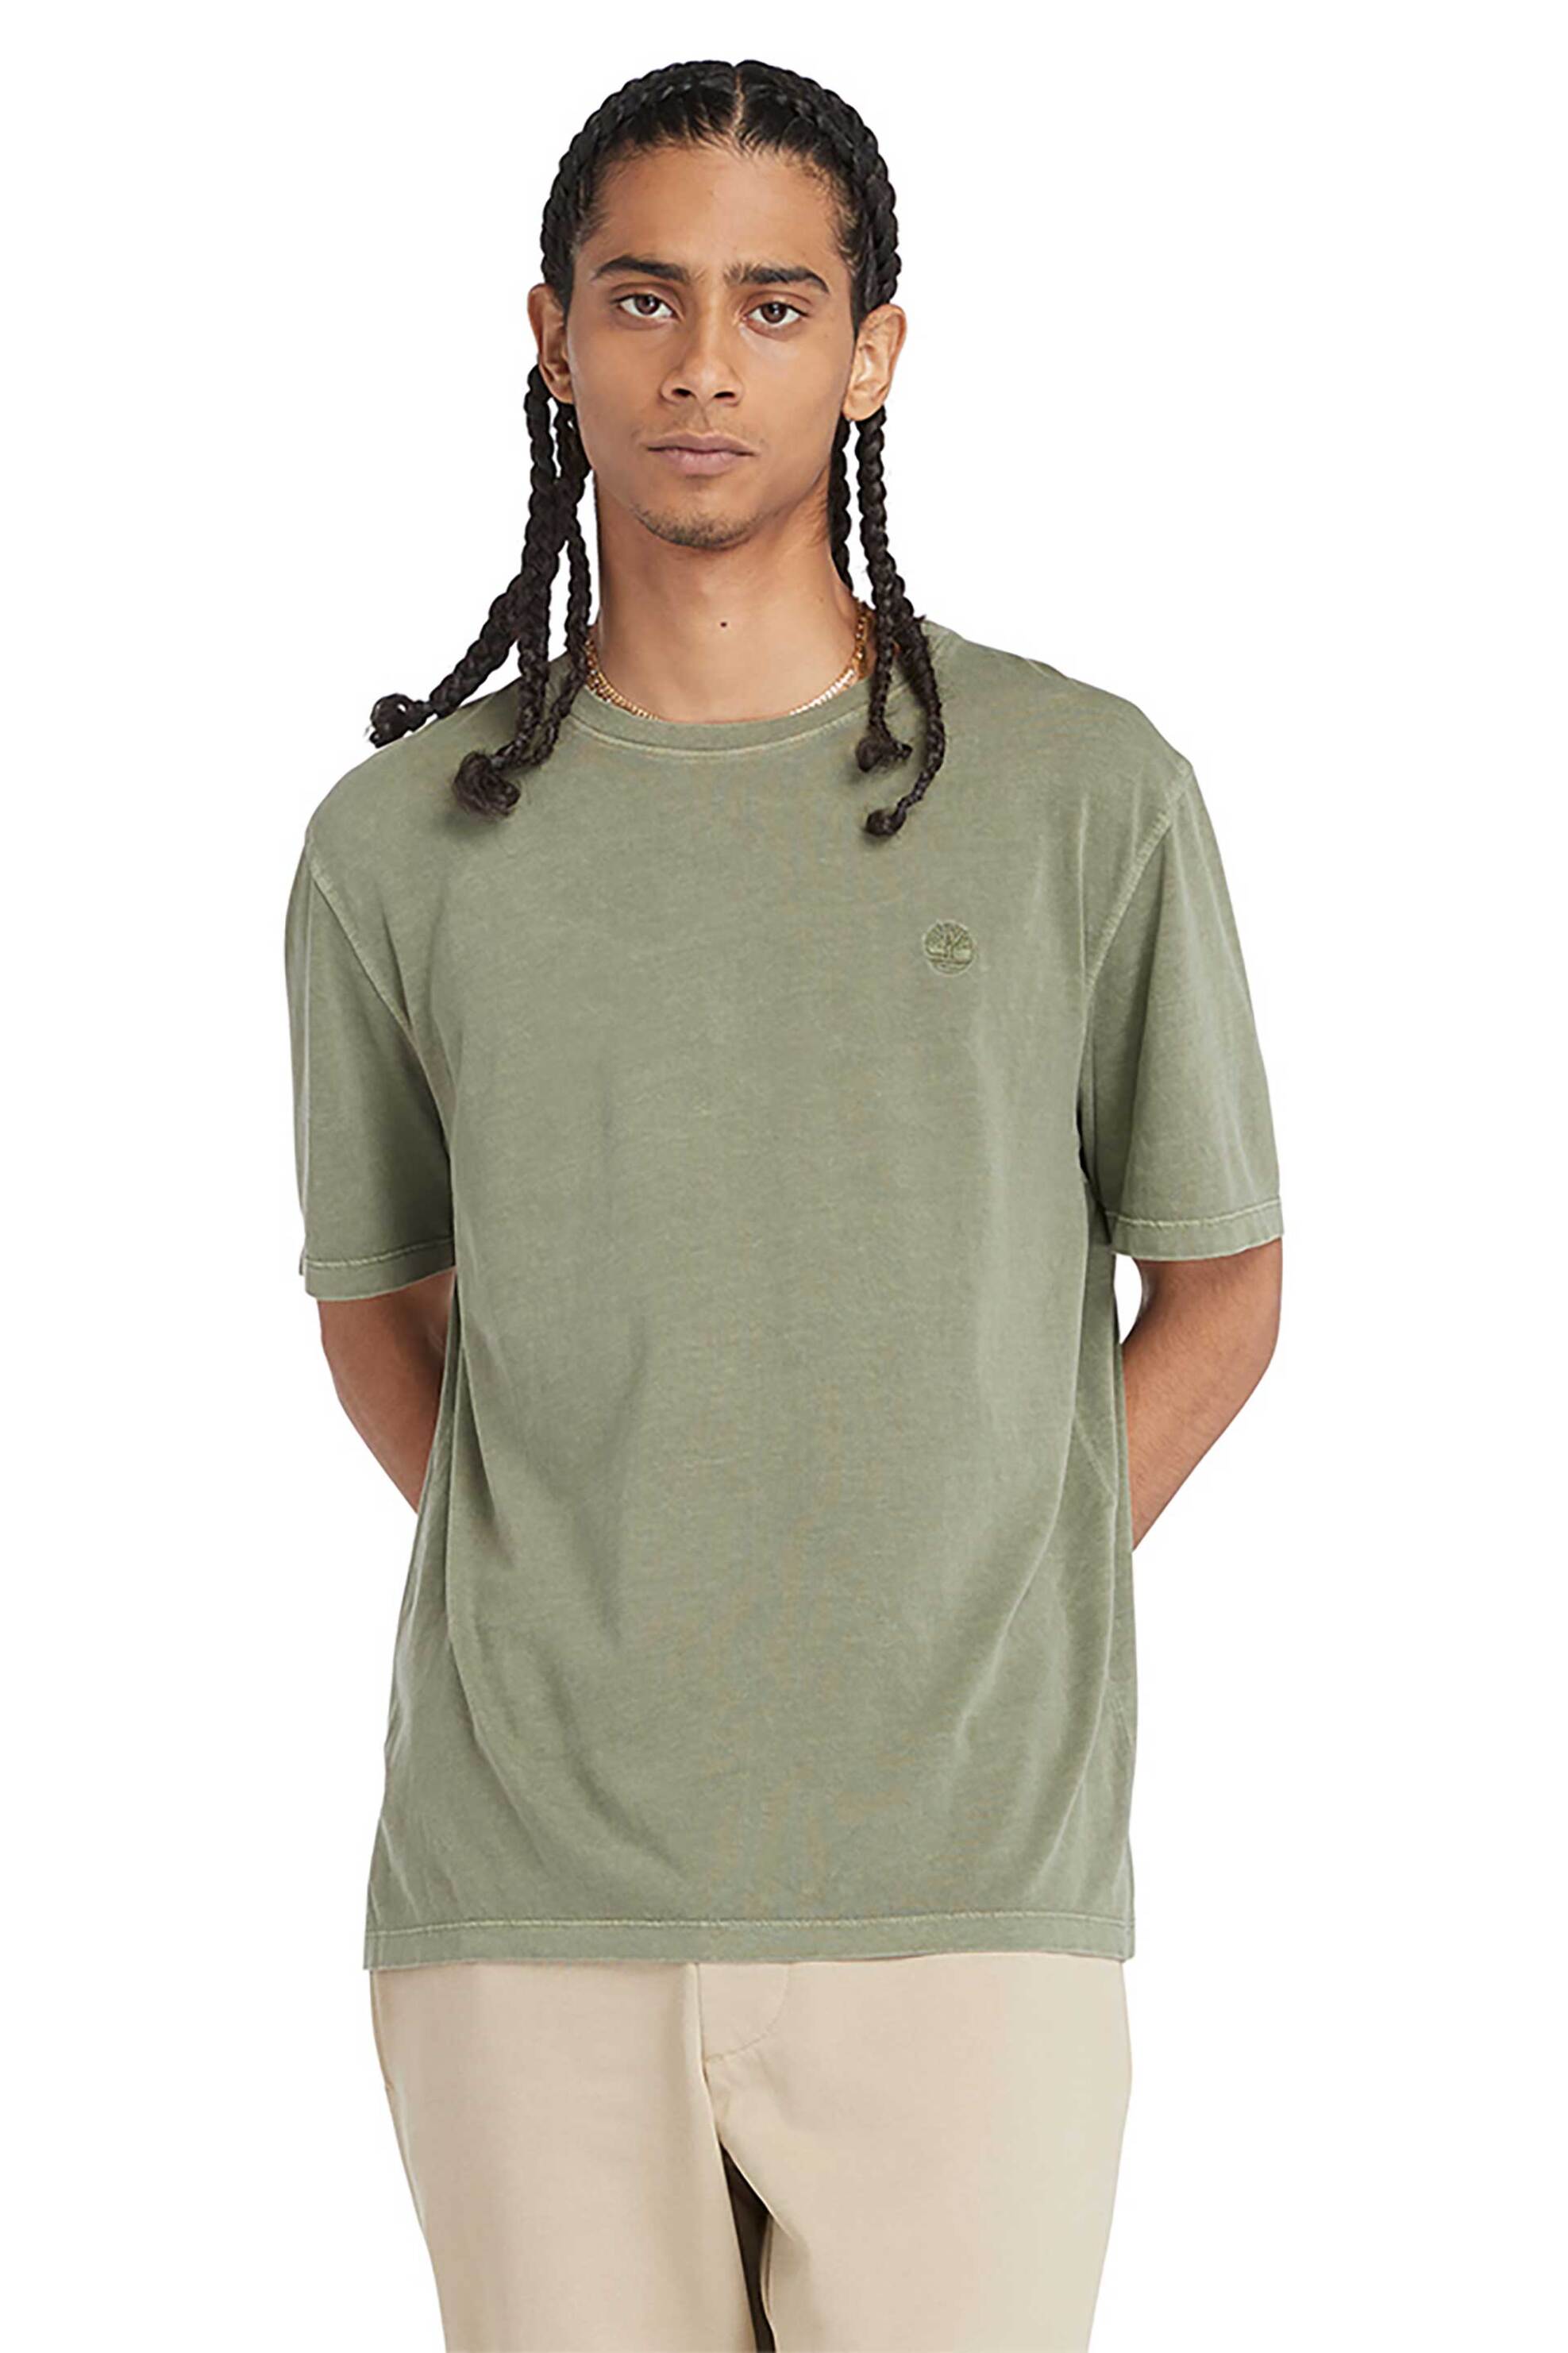 Ανδρική Μόδα > Ανδρικά Ρούχα > Ανδρικές Μπλούζες > Ανδρικά T-Shirts Timberland ανδρικό T-shirt Authentic Fit "Dunstan Garment Dye" - TB0A5YAY5901 Λαδί